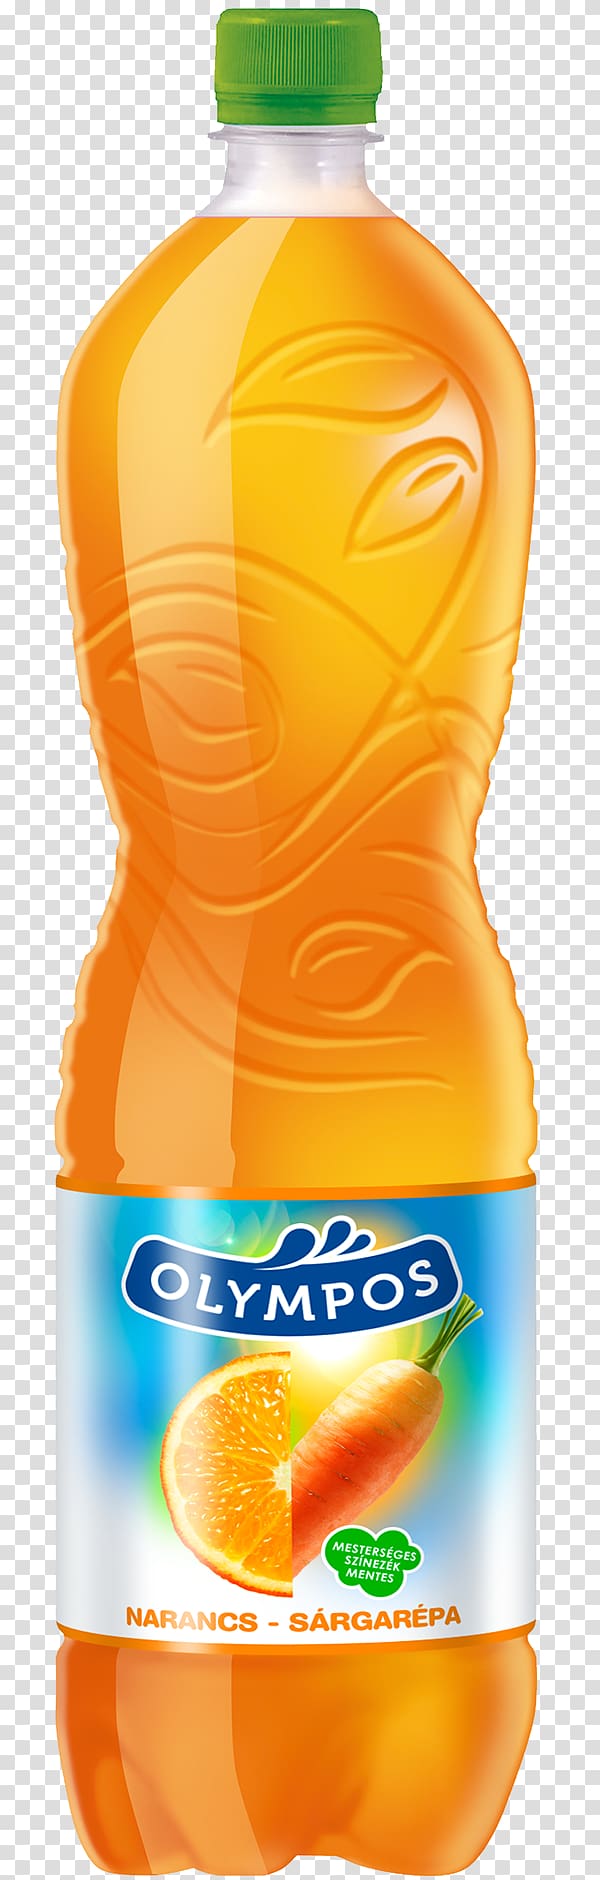 Orange juice Orange drink Orange soft drink Liquid Bottle, bottle transparent background PNG clipart